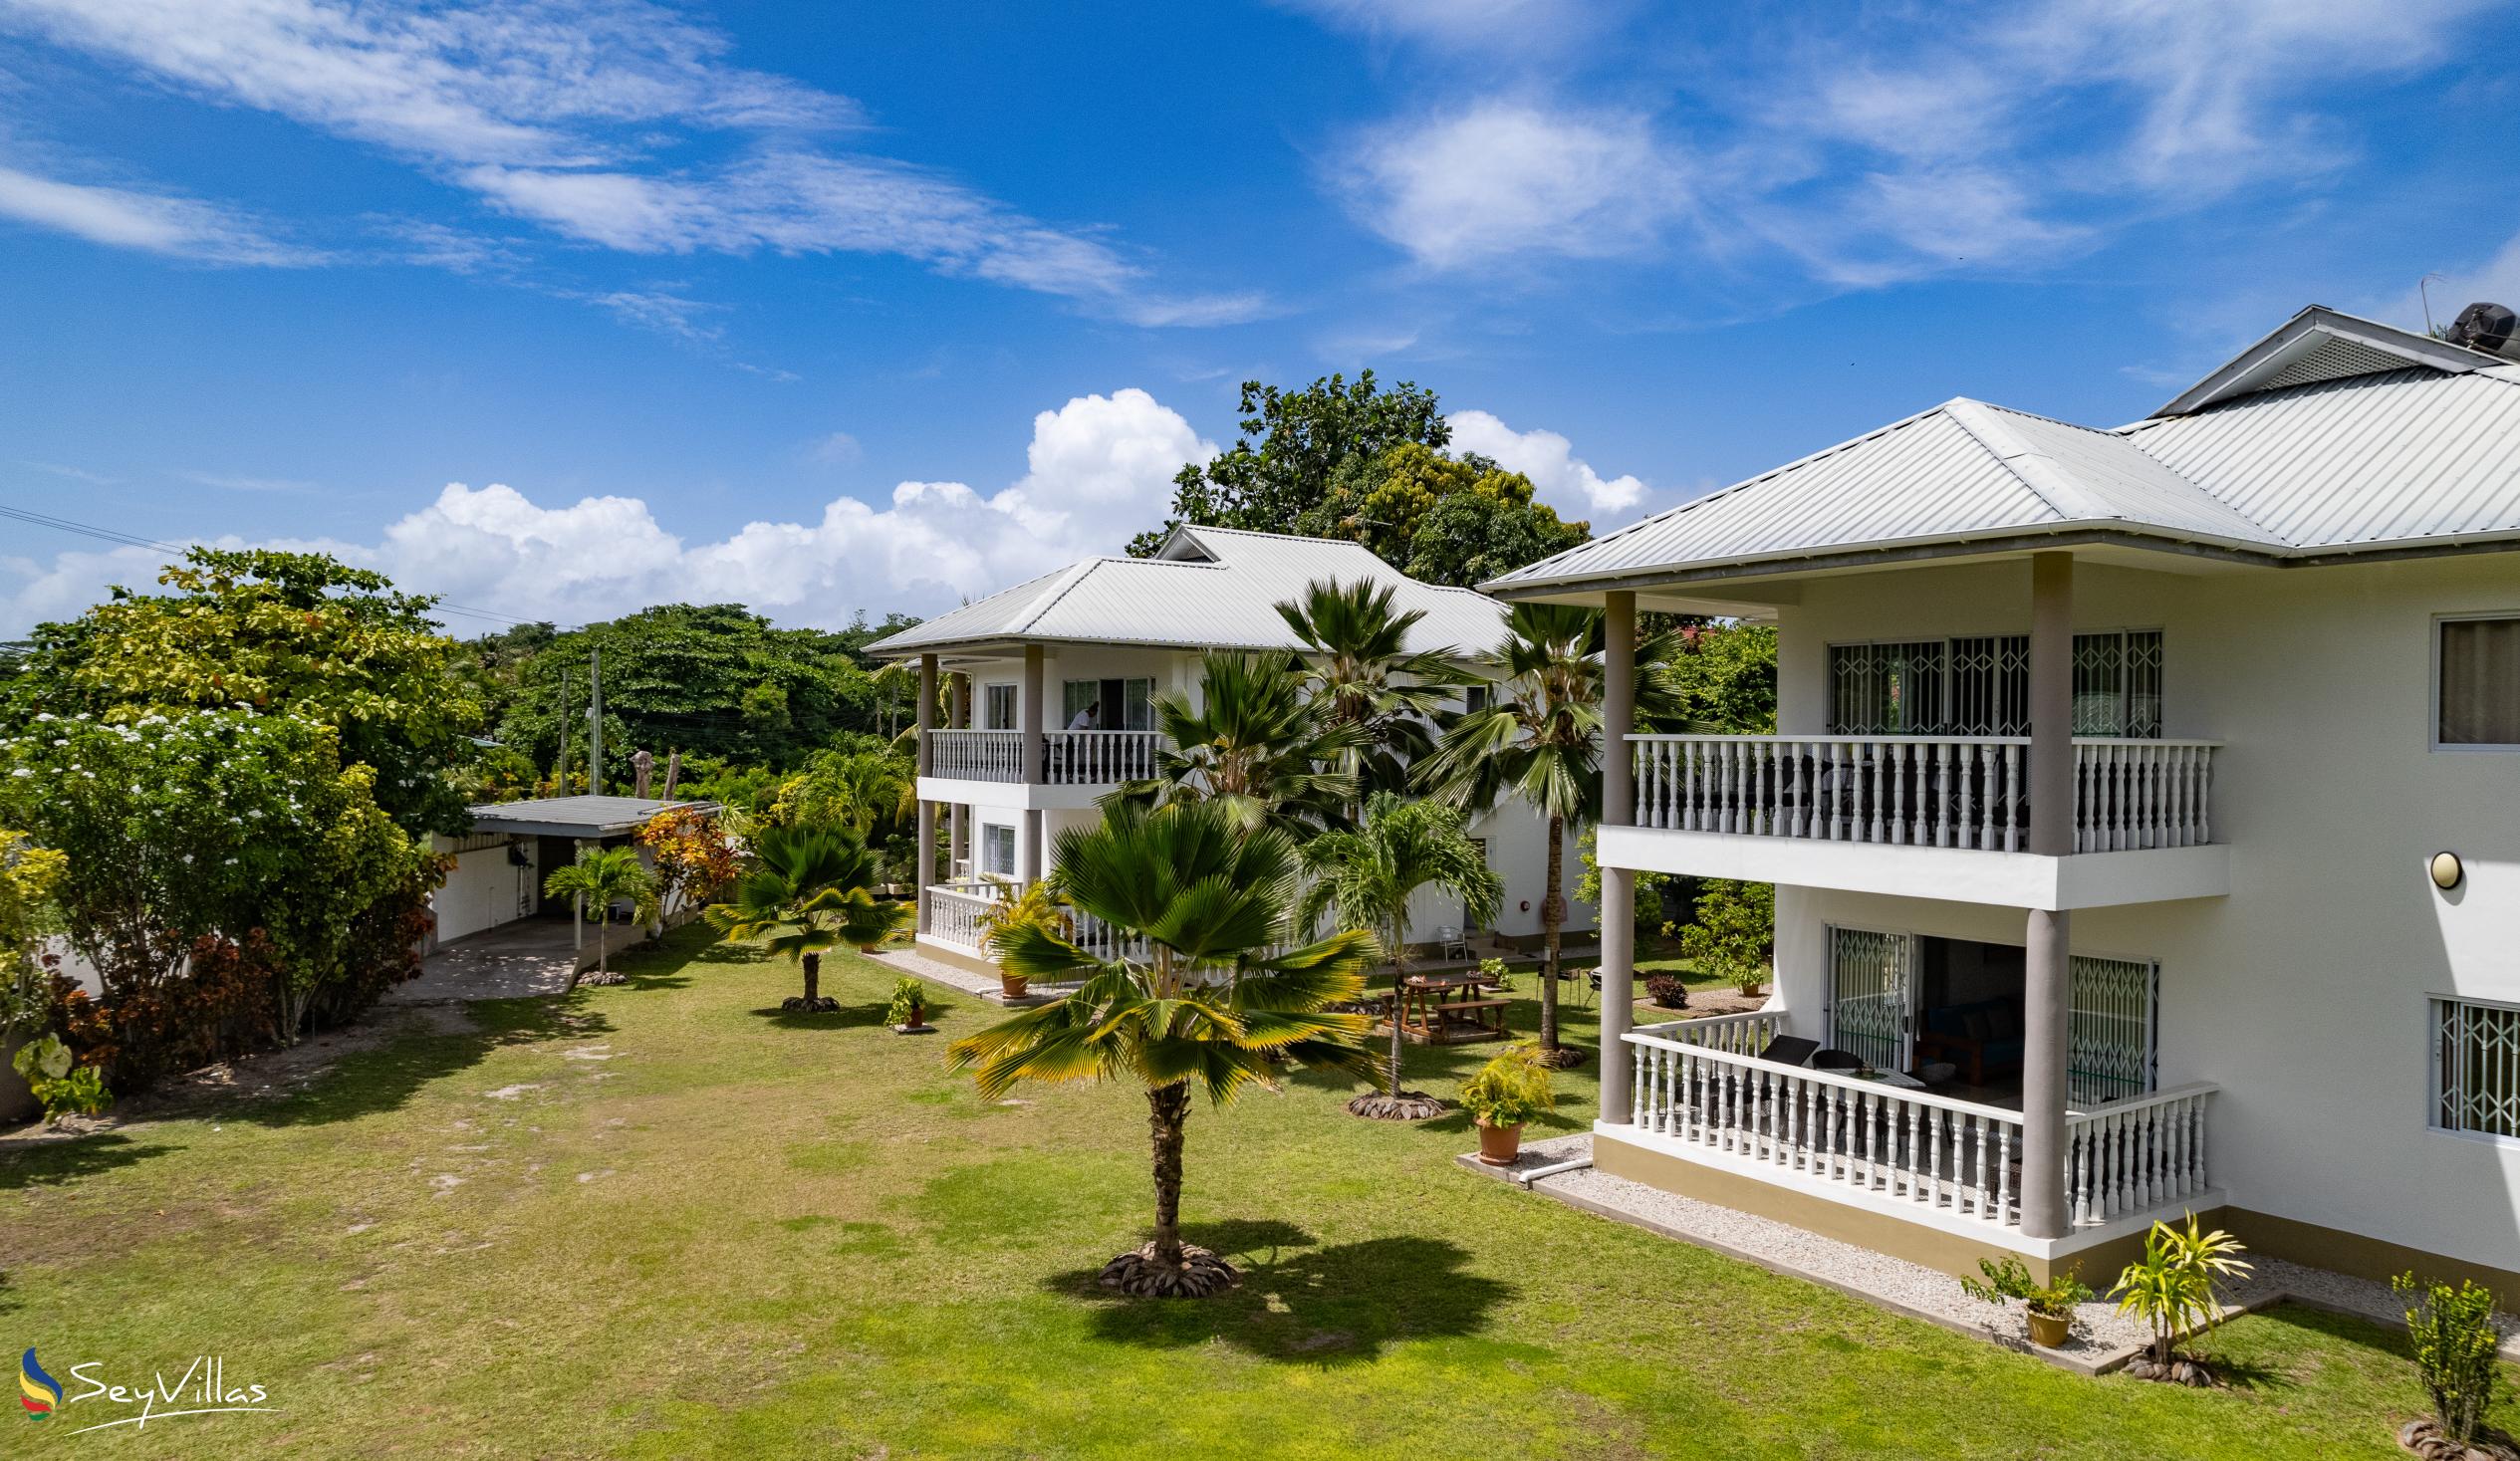 Foto 4: Casa Tara Villas - Aussenbereich - Praslin (Seychellen)